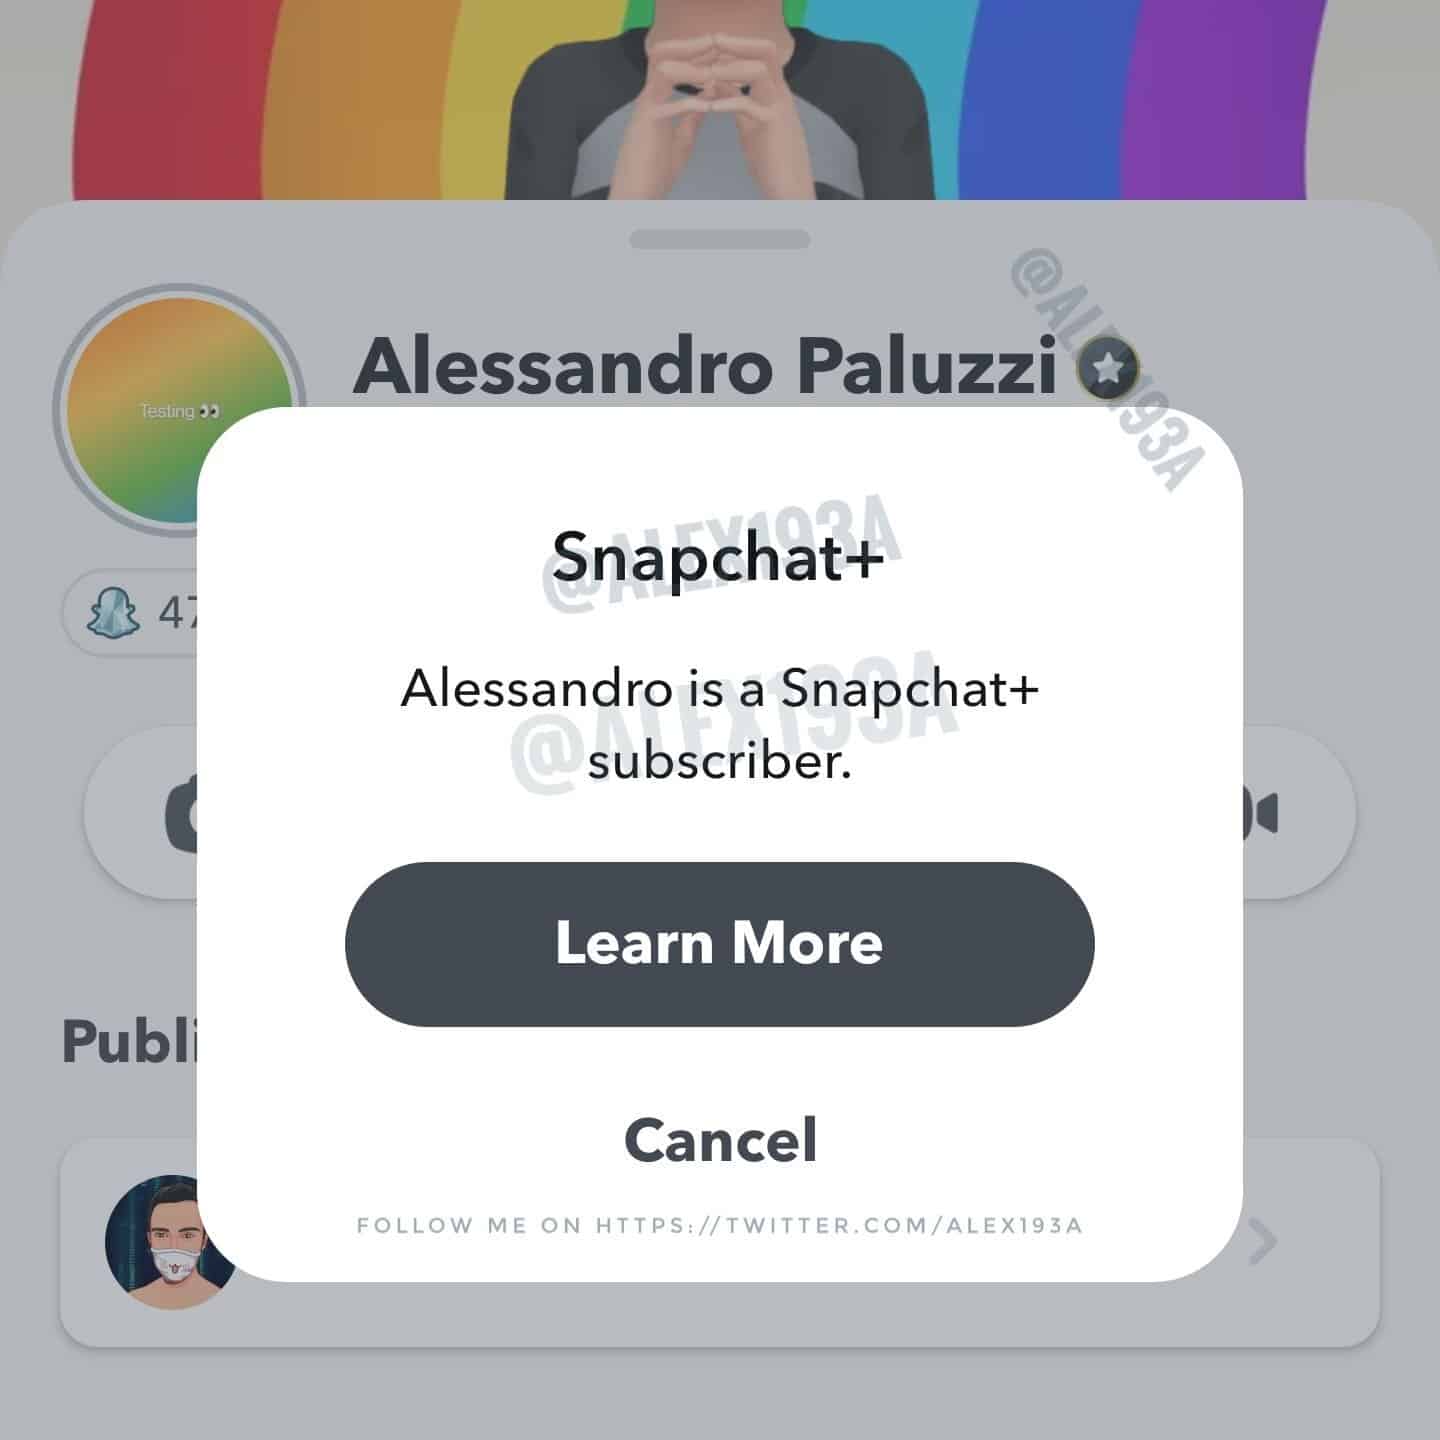 Aperçu du badge pour les abonnées Snapchat+